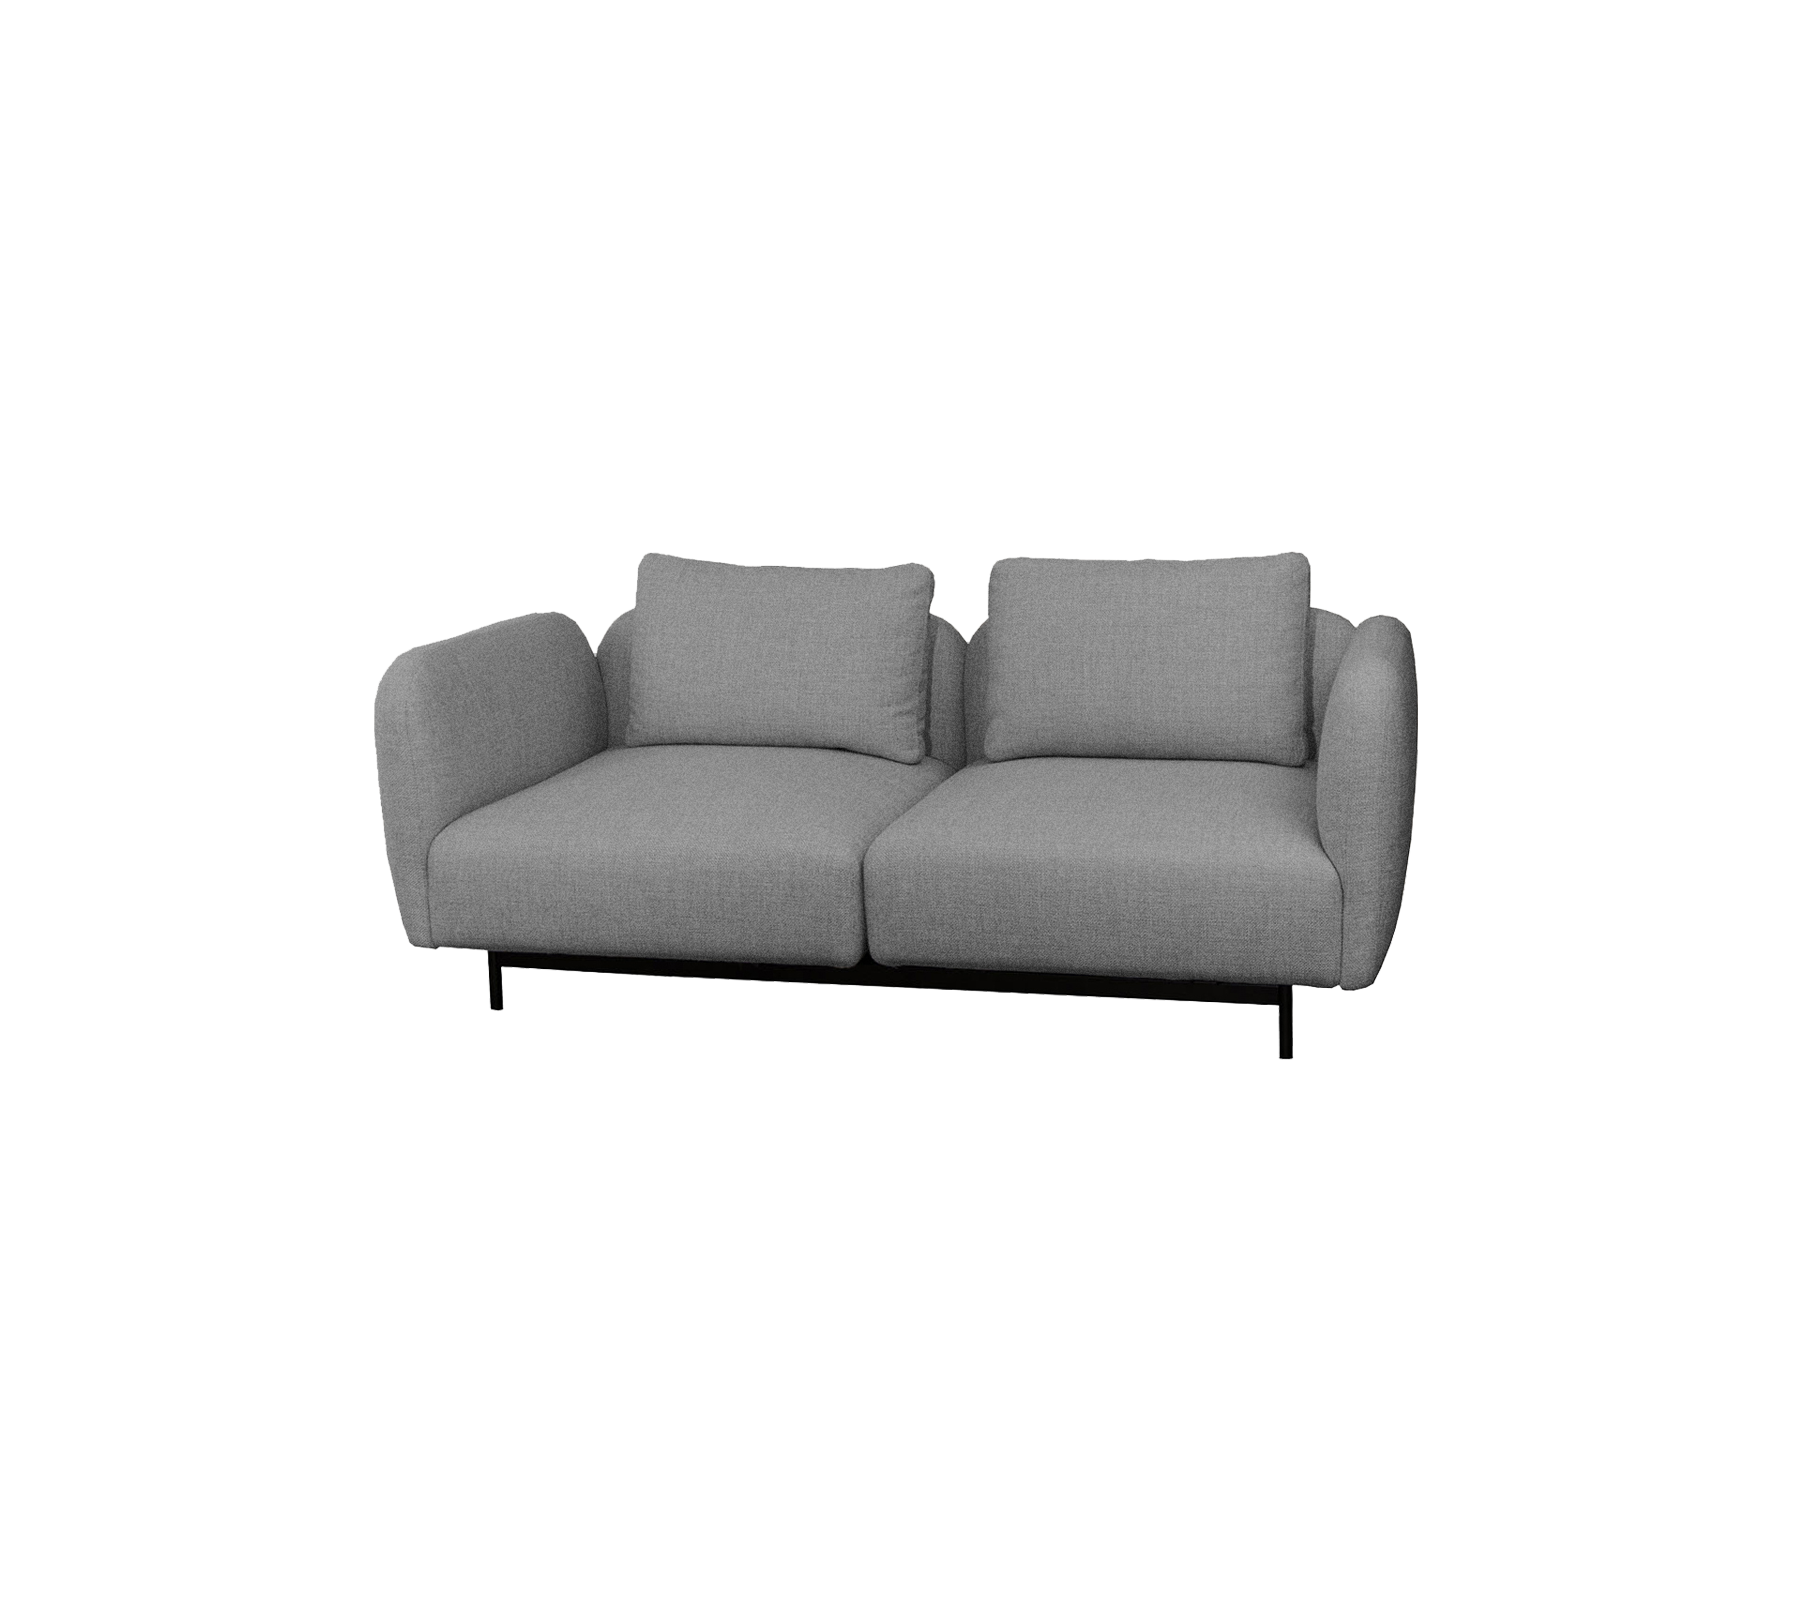 Aura sofá para dos personas con descansabrazo alto (9)